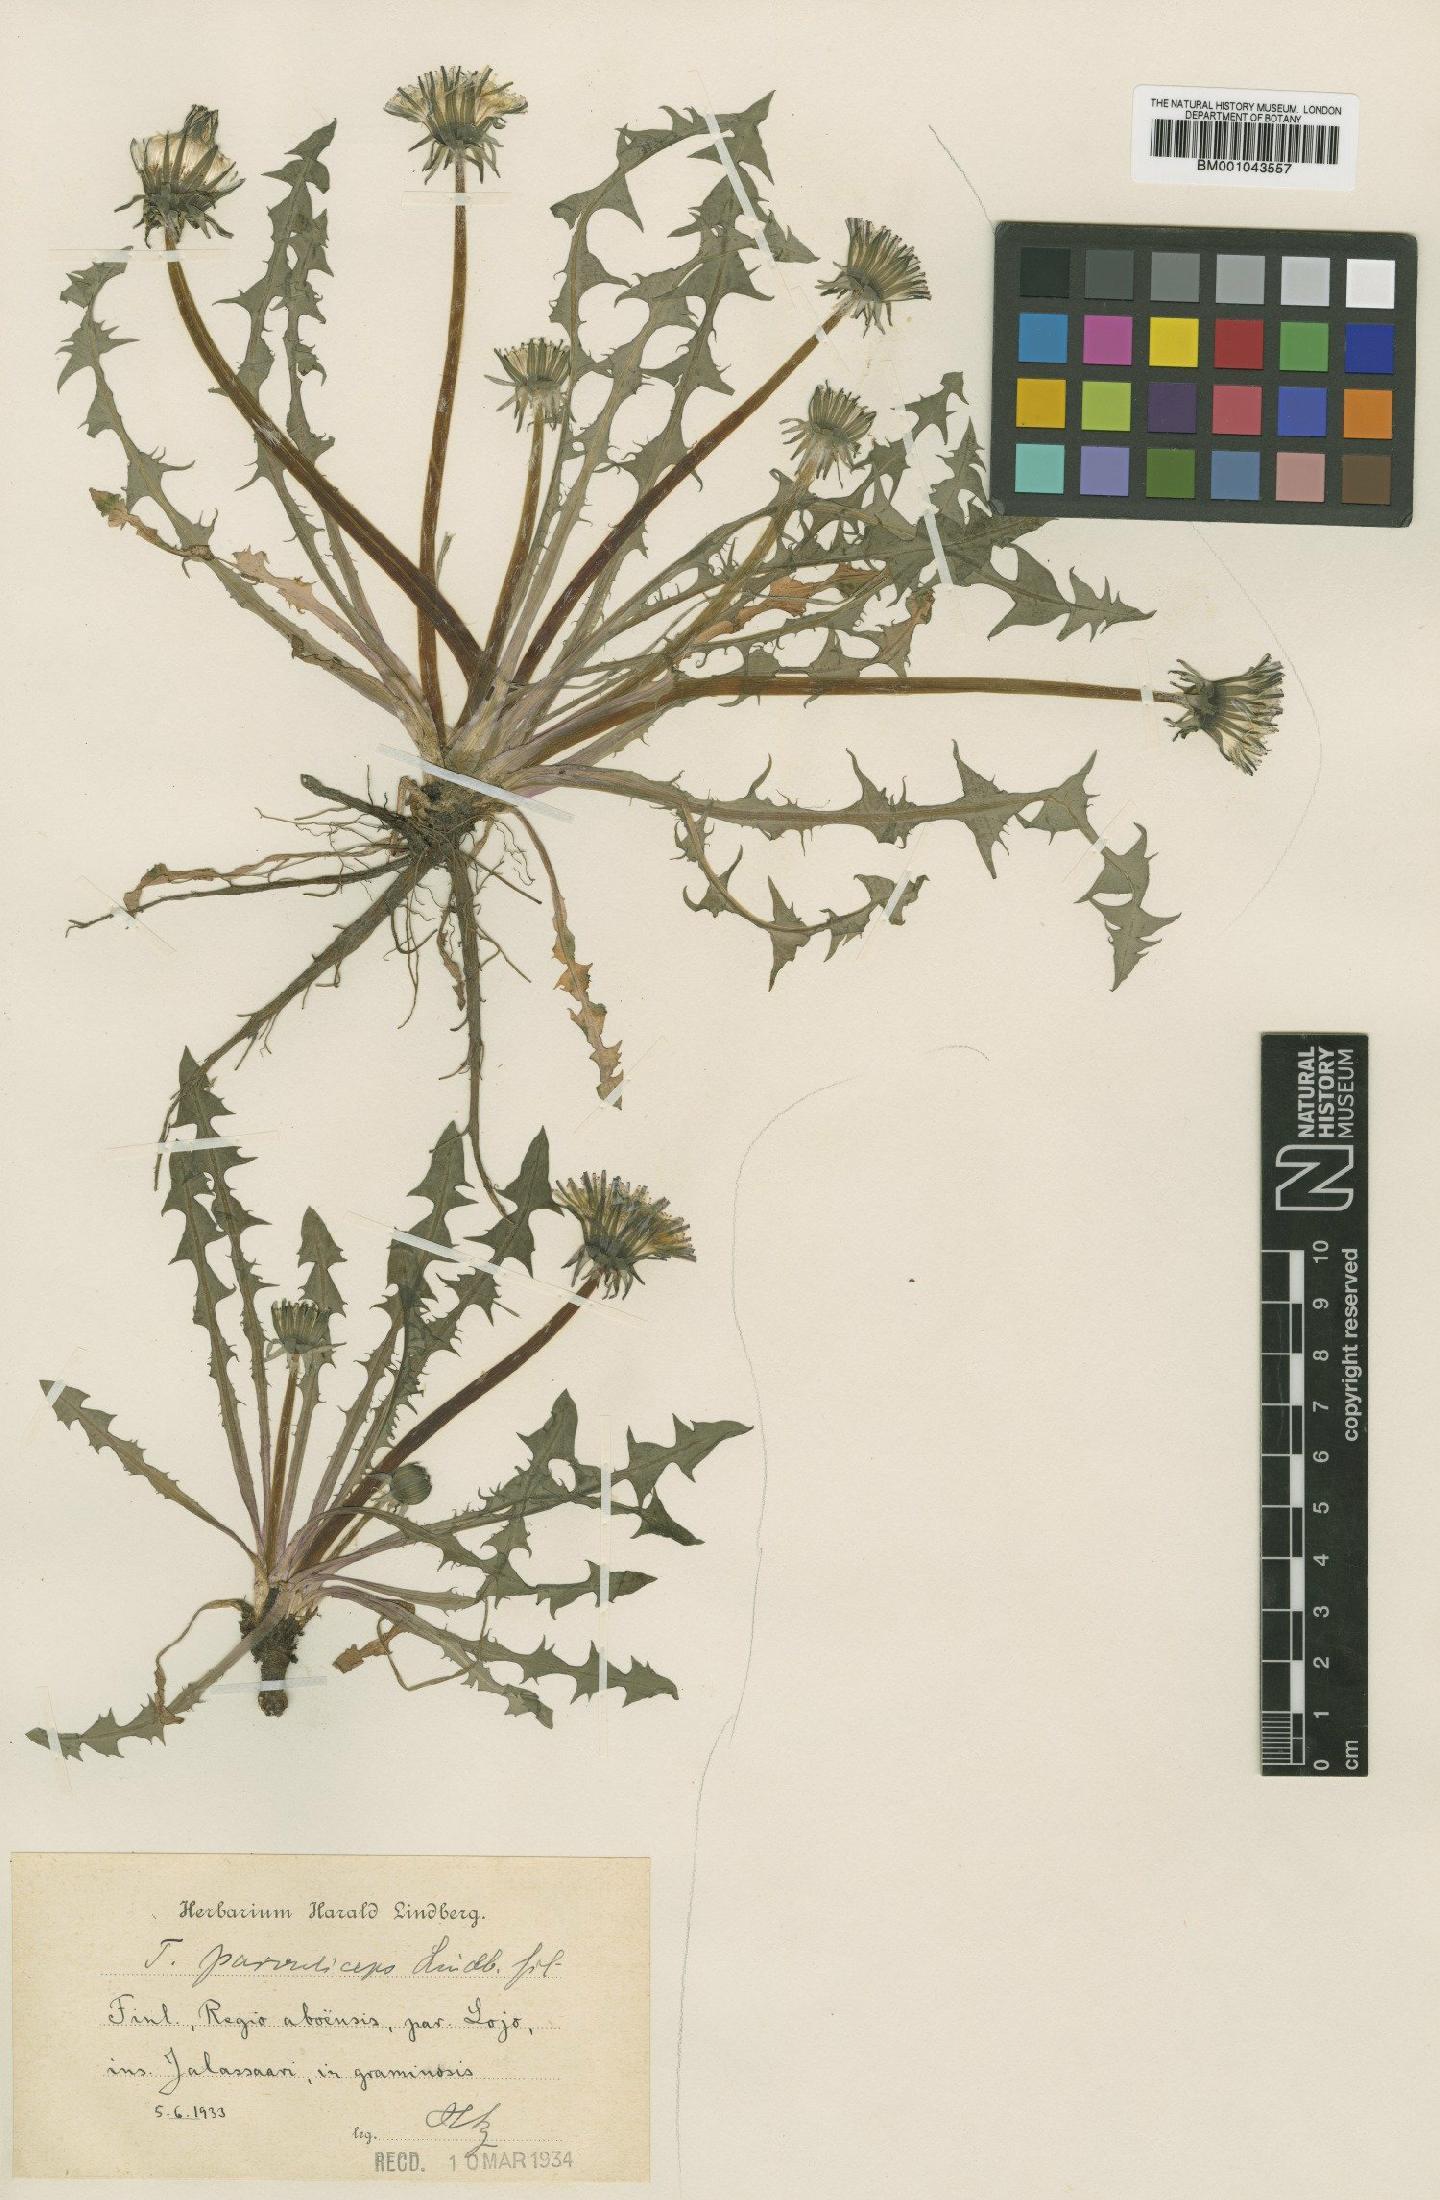 To NHMUK collection (Taraxacum parvuliceps Lindb.; Type; NHMUK:ecatalogue:2201124)